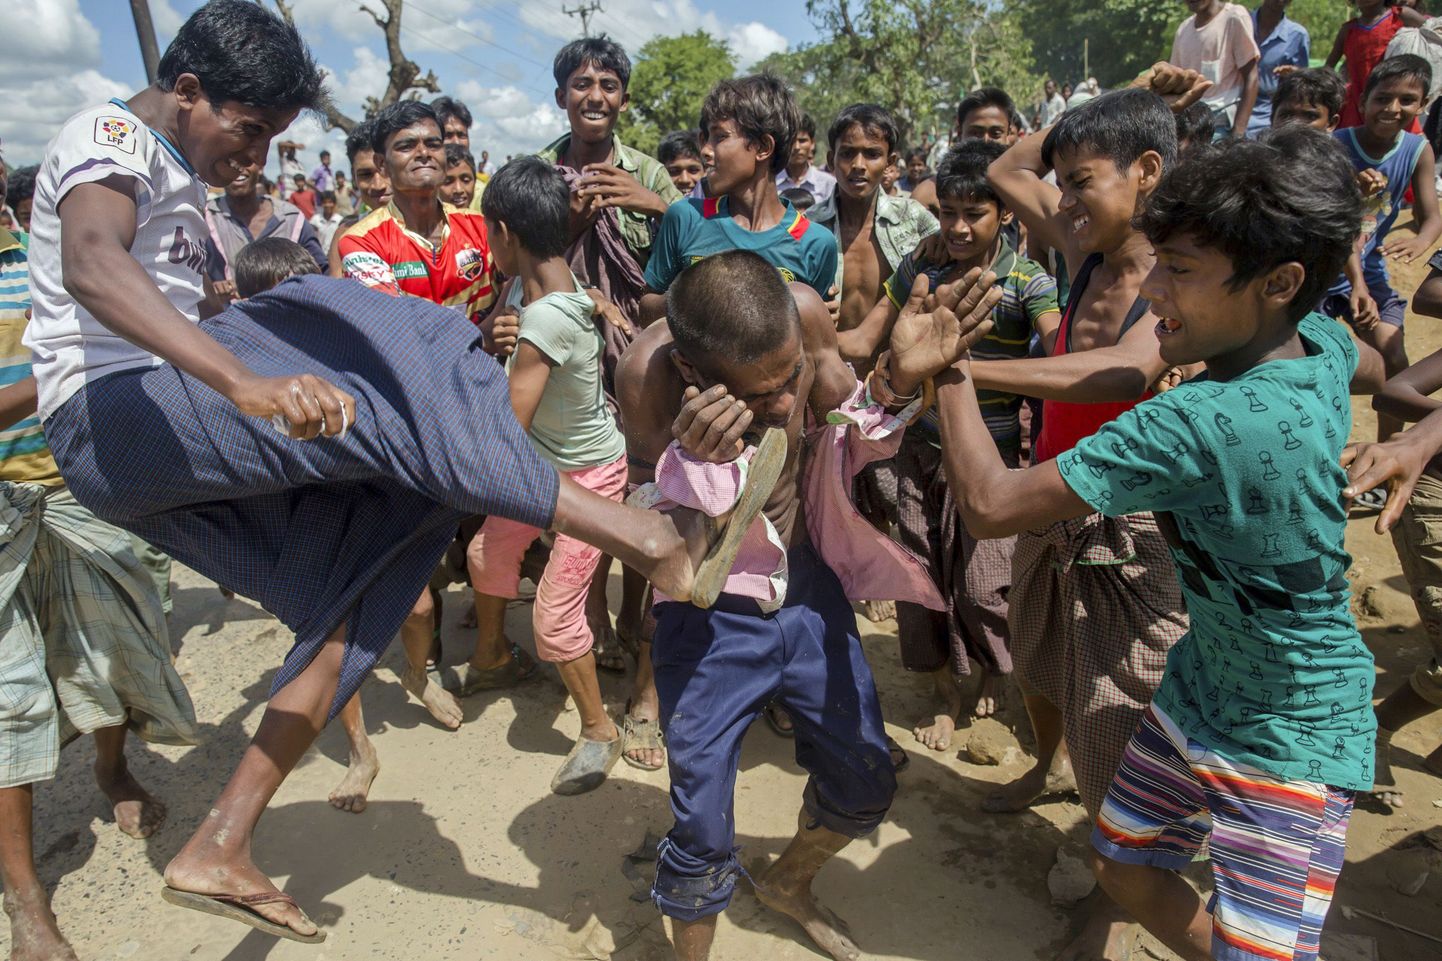 Bз буддисткой Мьянмы (Бирма) в соседнюю Бангладеш бежали почти 400 тысяч исповедующих ислам рохинджа, что привело к началу серьезной этнической чистки.